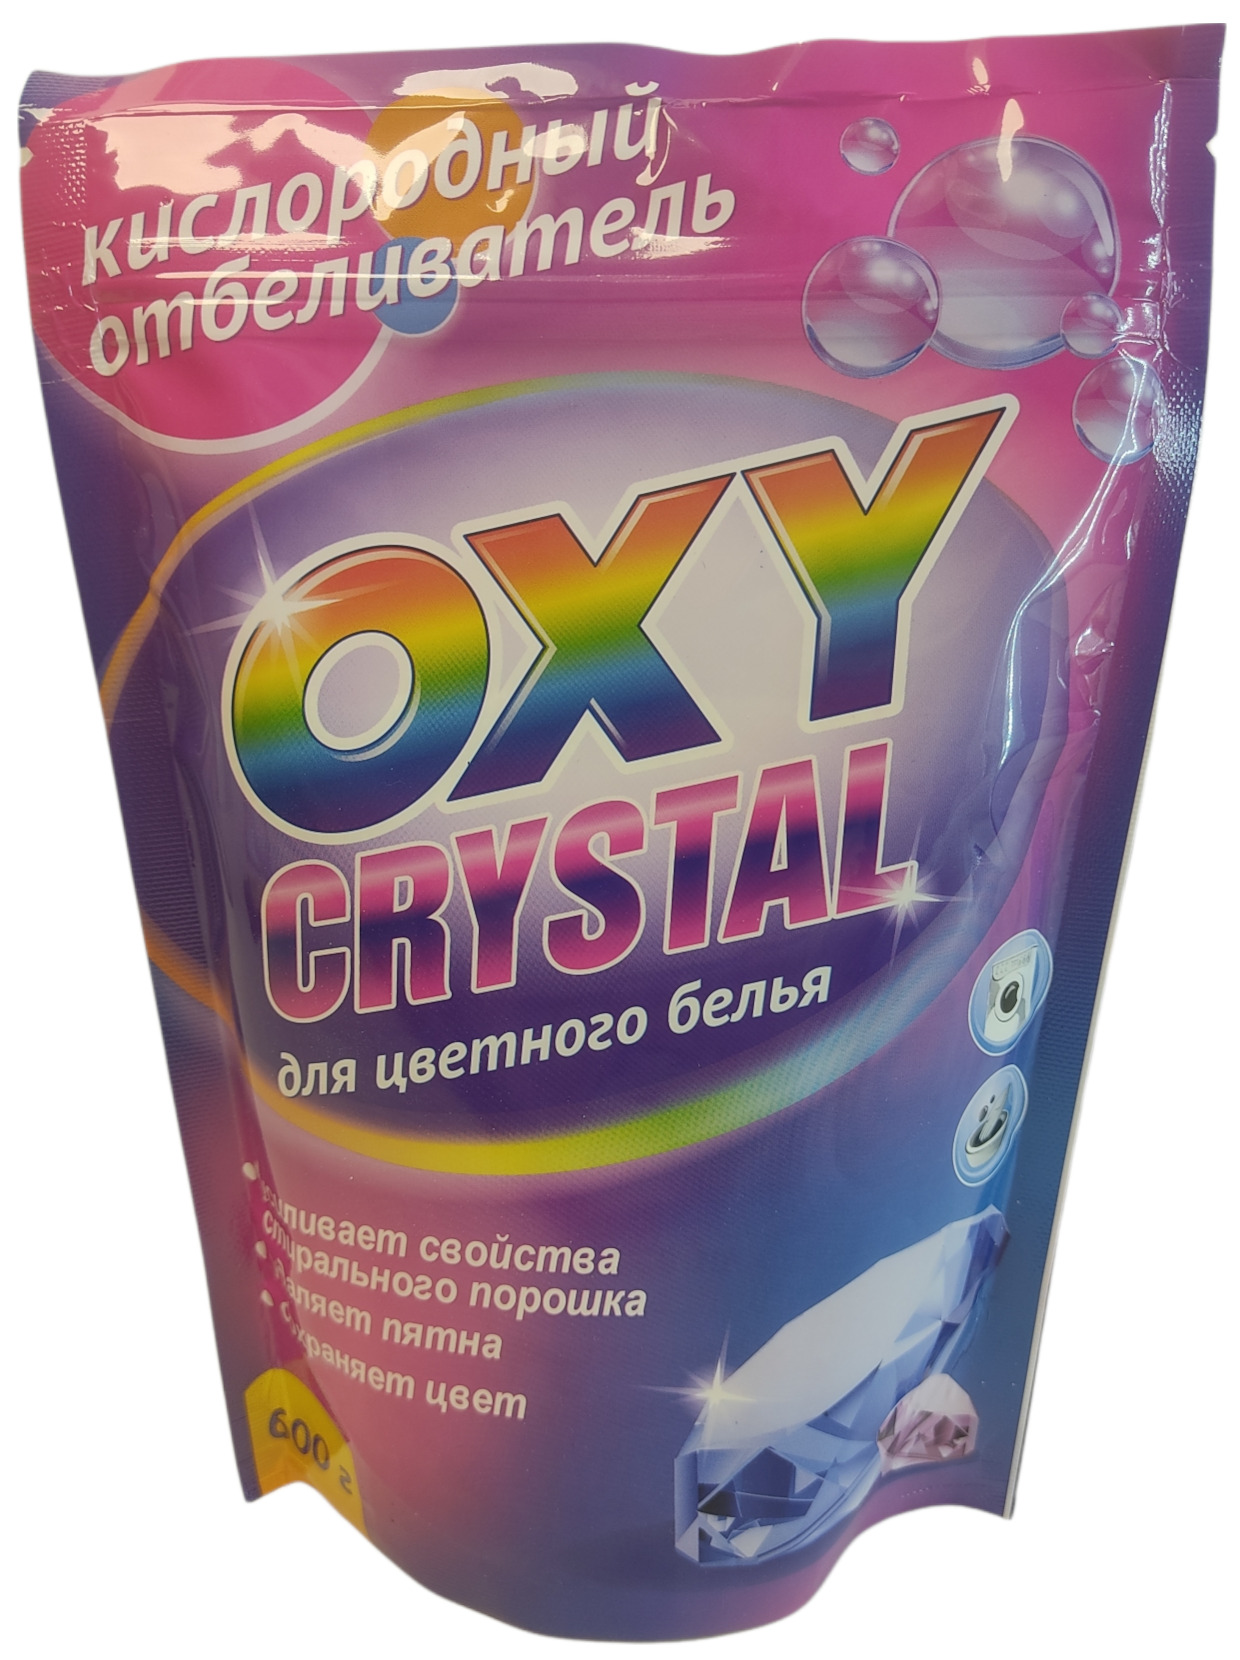 Oxy crystal. Отбеливатель для цветного белья. Кислородный отбеливатель для цветного белья. Кислородный отбеливатель oxy Crystal для цветного белья 600 г.. Отбеливатель oxy Crystal, 600 г.